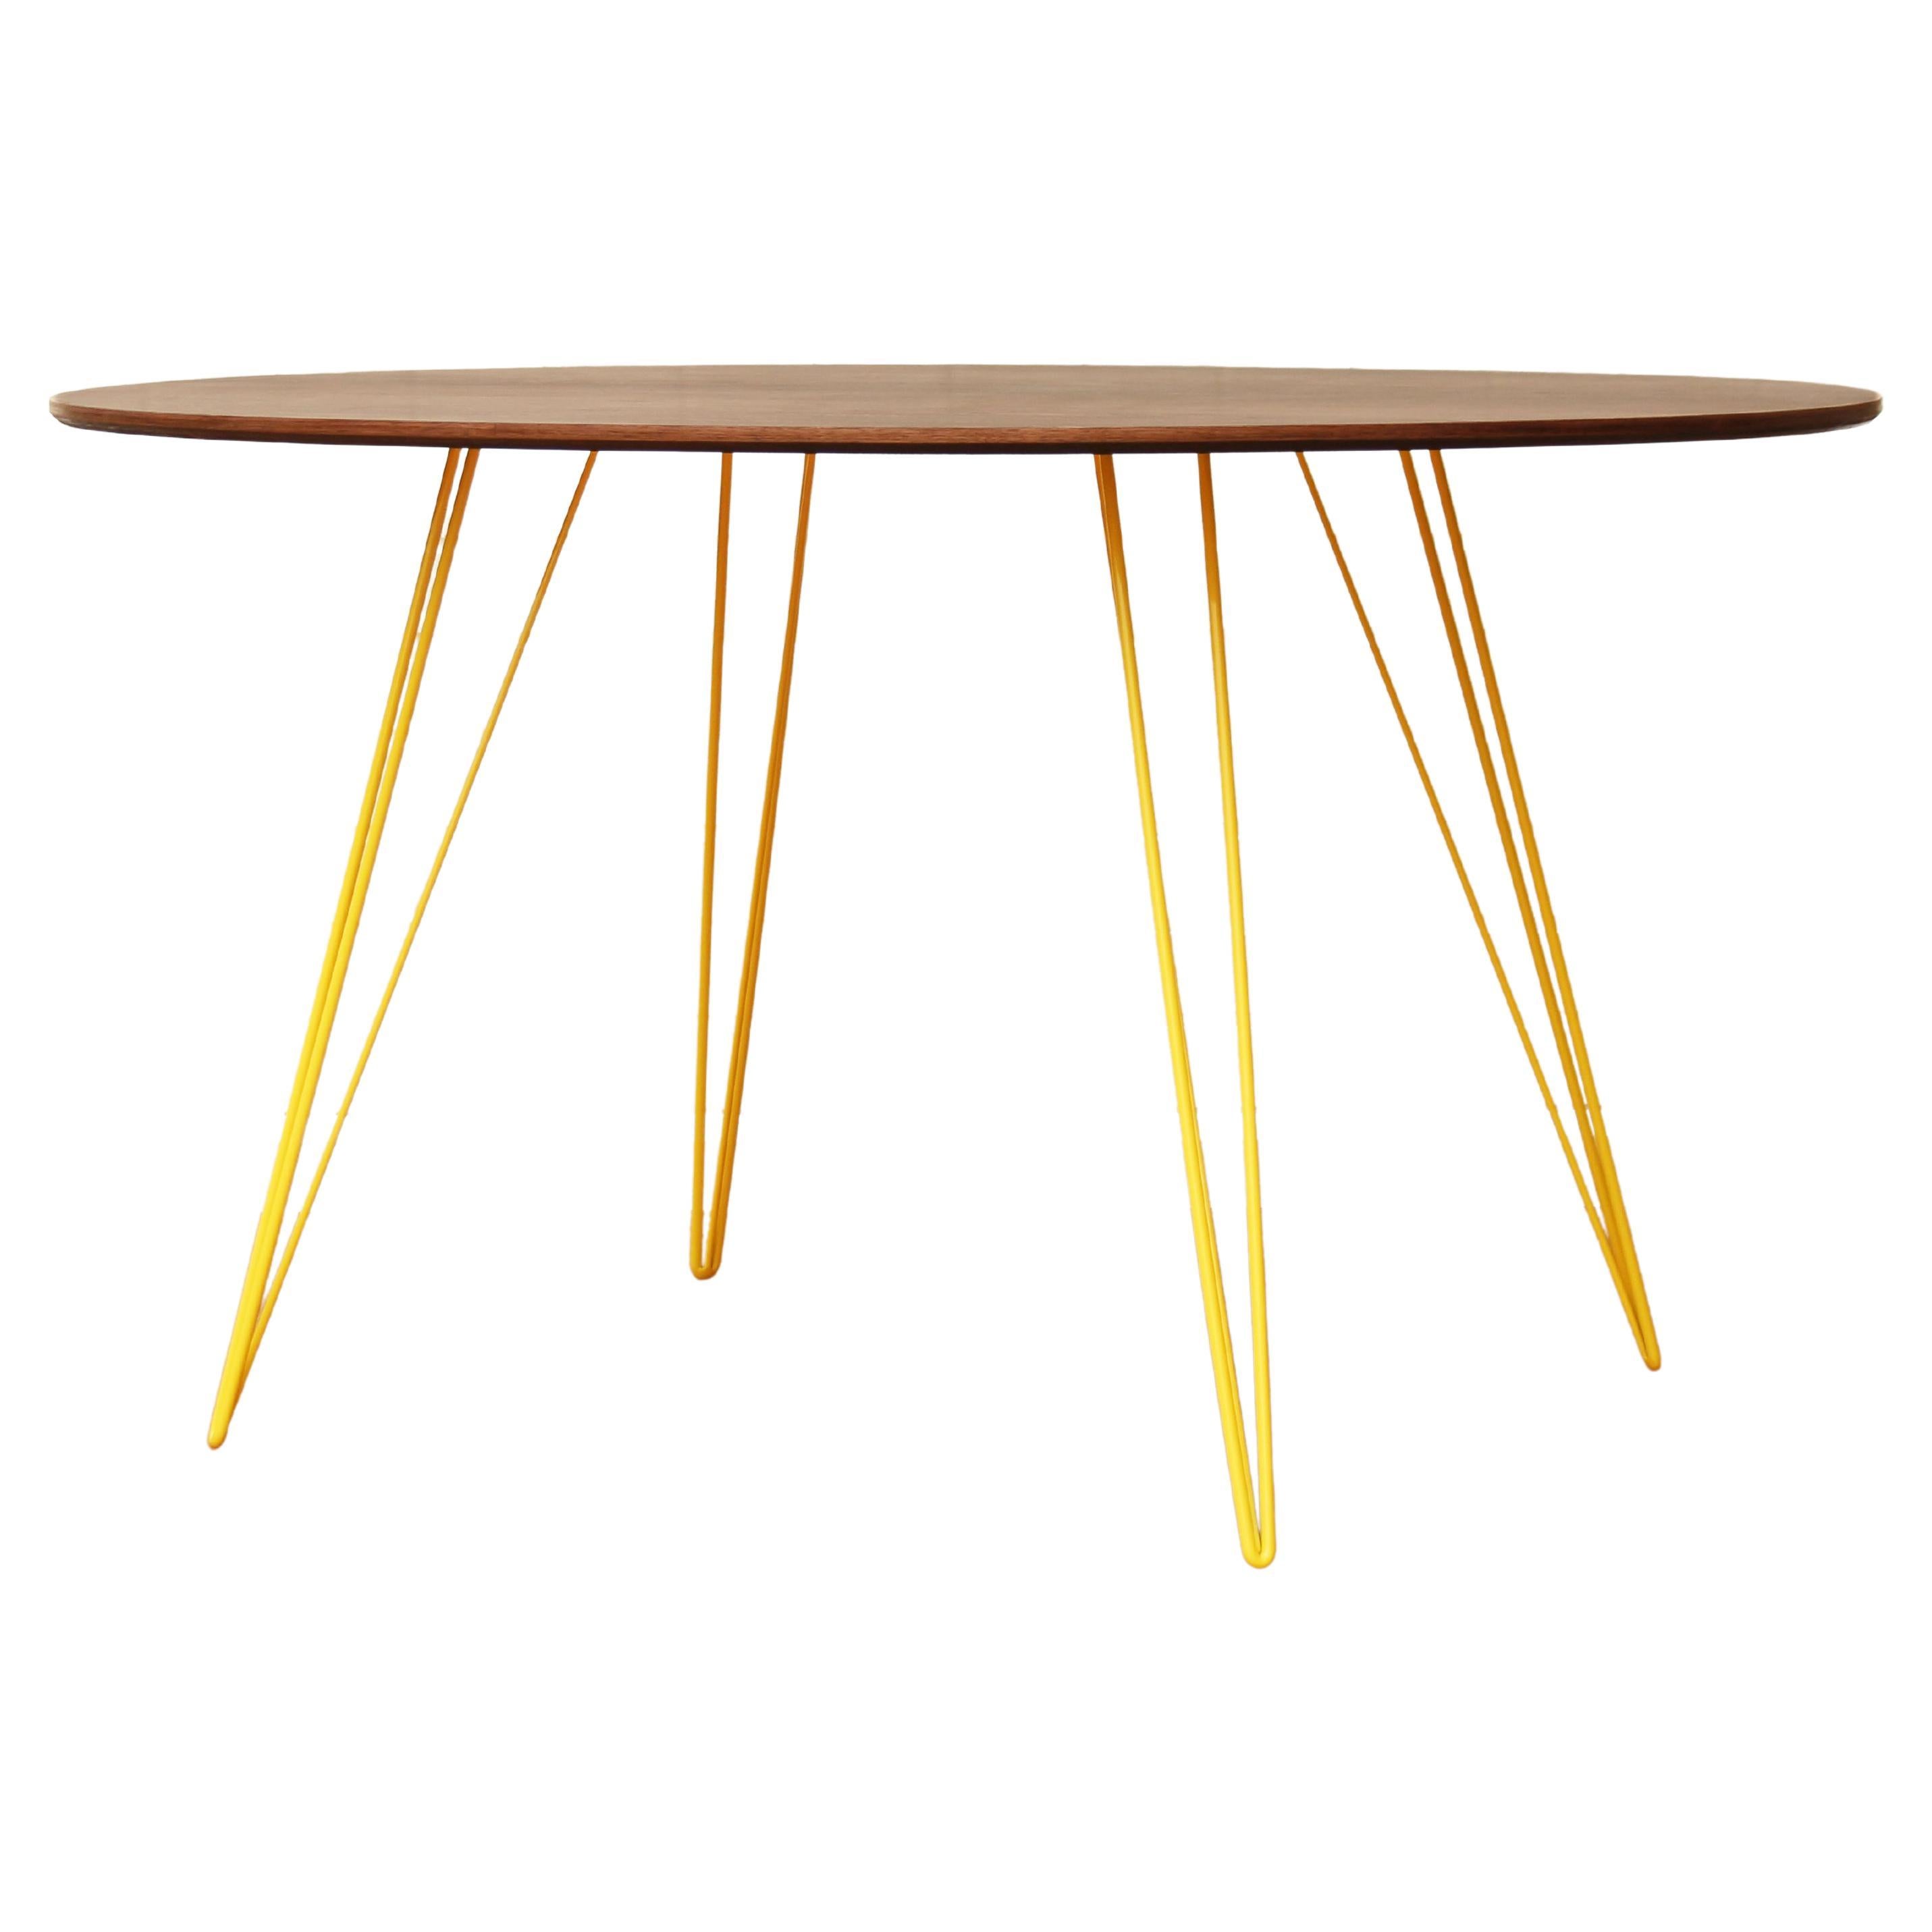 Williams-Esstisch aus Nussbaumholz mit gelben Haarnadelbeinen und ovaler Platte